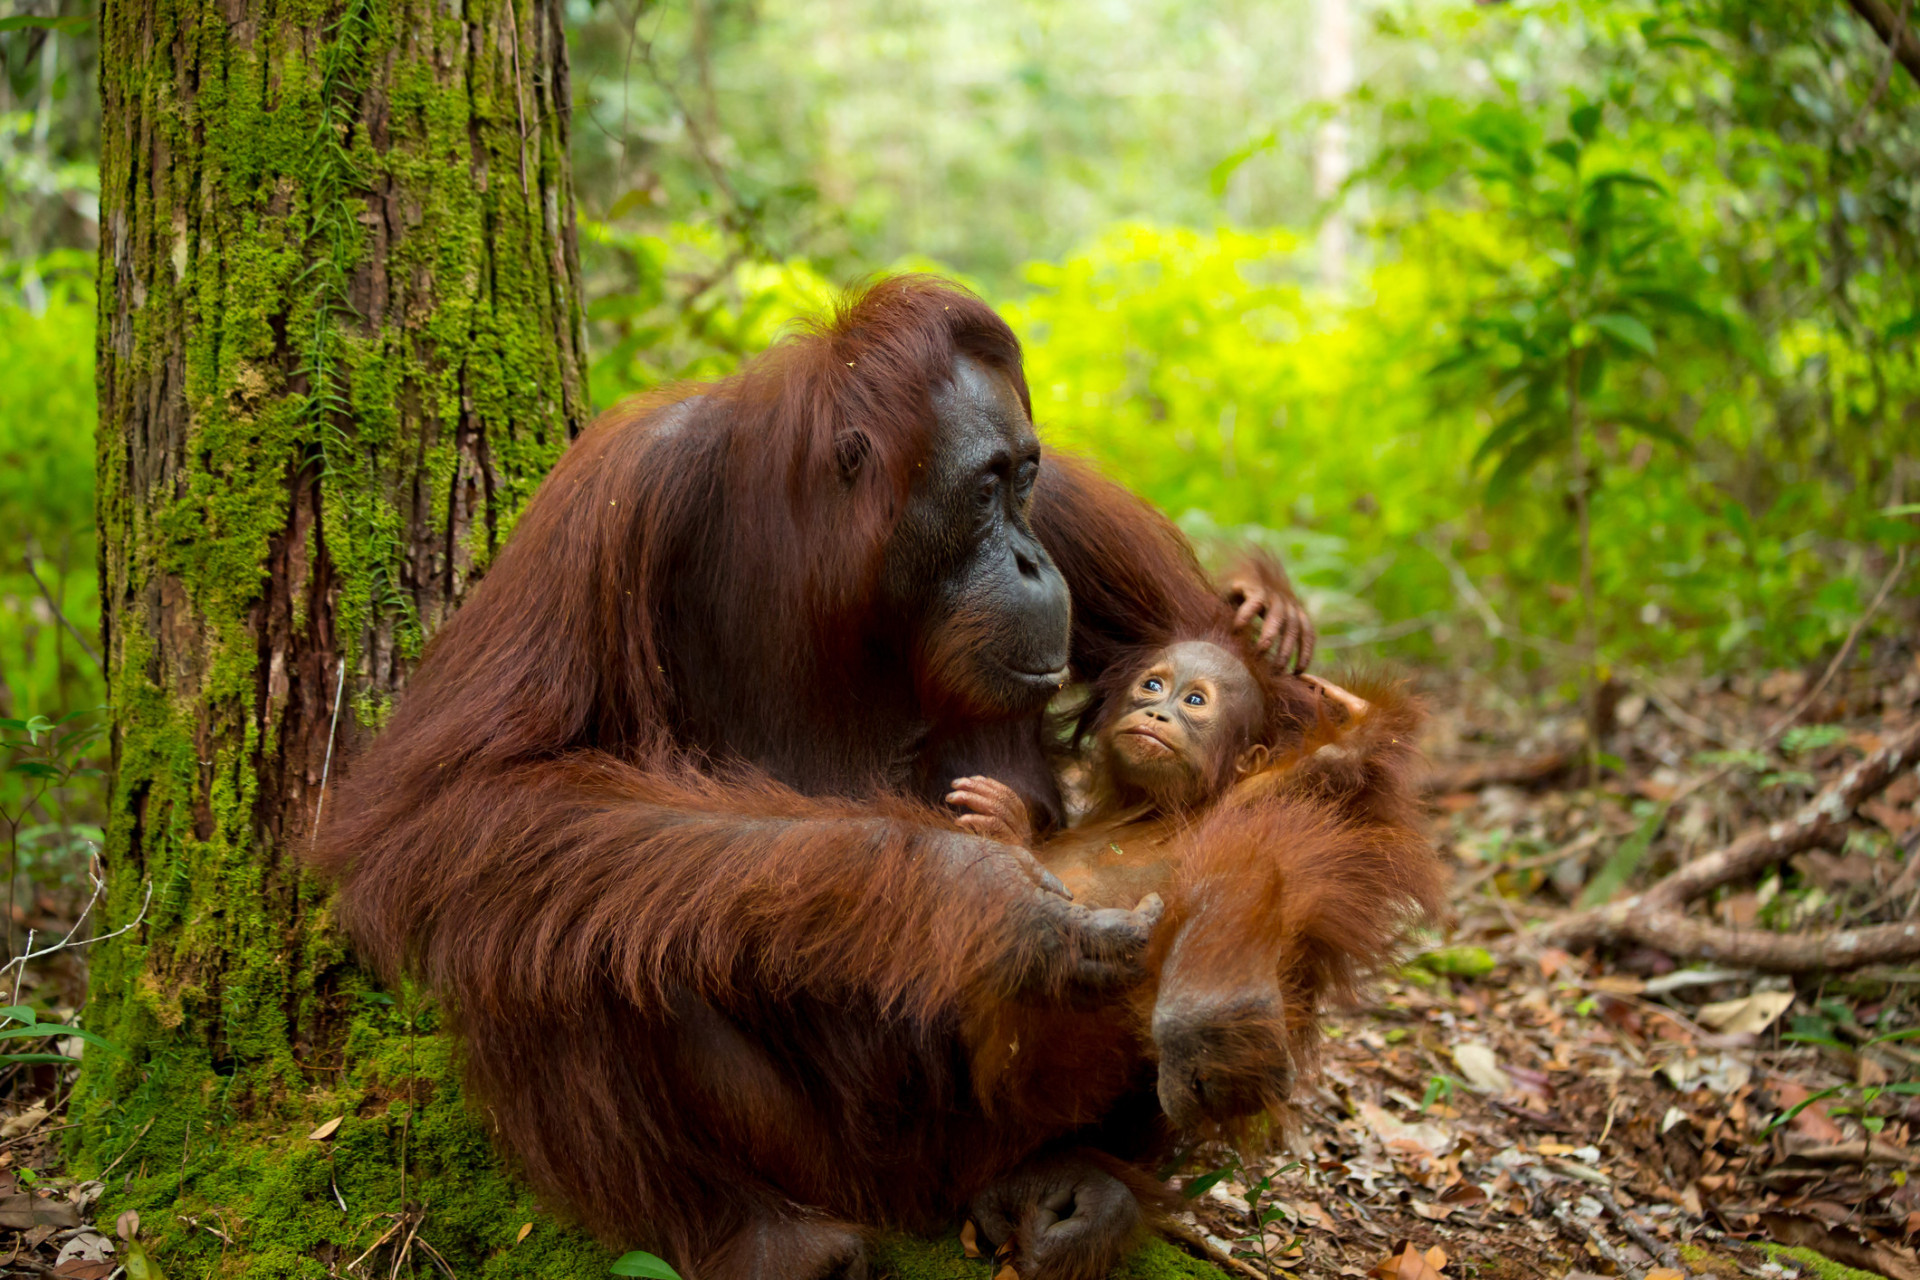 Malheureusement, il n'existe que deux endroits dans le monde pour voir des orangs-outans sauvages: l'île malaisienne de Bornéo et Sumatra, en Indonésie. Rendez-vous à Bornéo entre mars et octobre, pendant la saison sèche, pour admirer ces nobles créatures.<p>Tu pourrais aussi aimer:<a href="https://www.starsinsider.com/n/315037?utm_source=msn.com&utm_medium=display&utm_campaign=referral_description&utm_content=338214v3"> Les meilleurs compléments alimentaires pour booster votre cerveau</a></p>